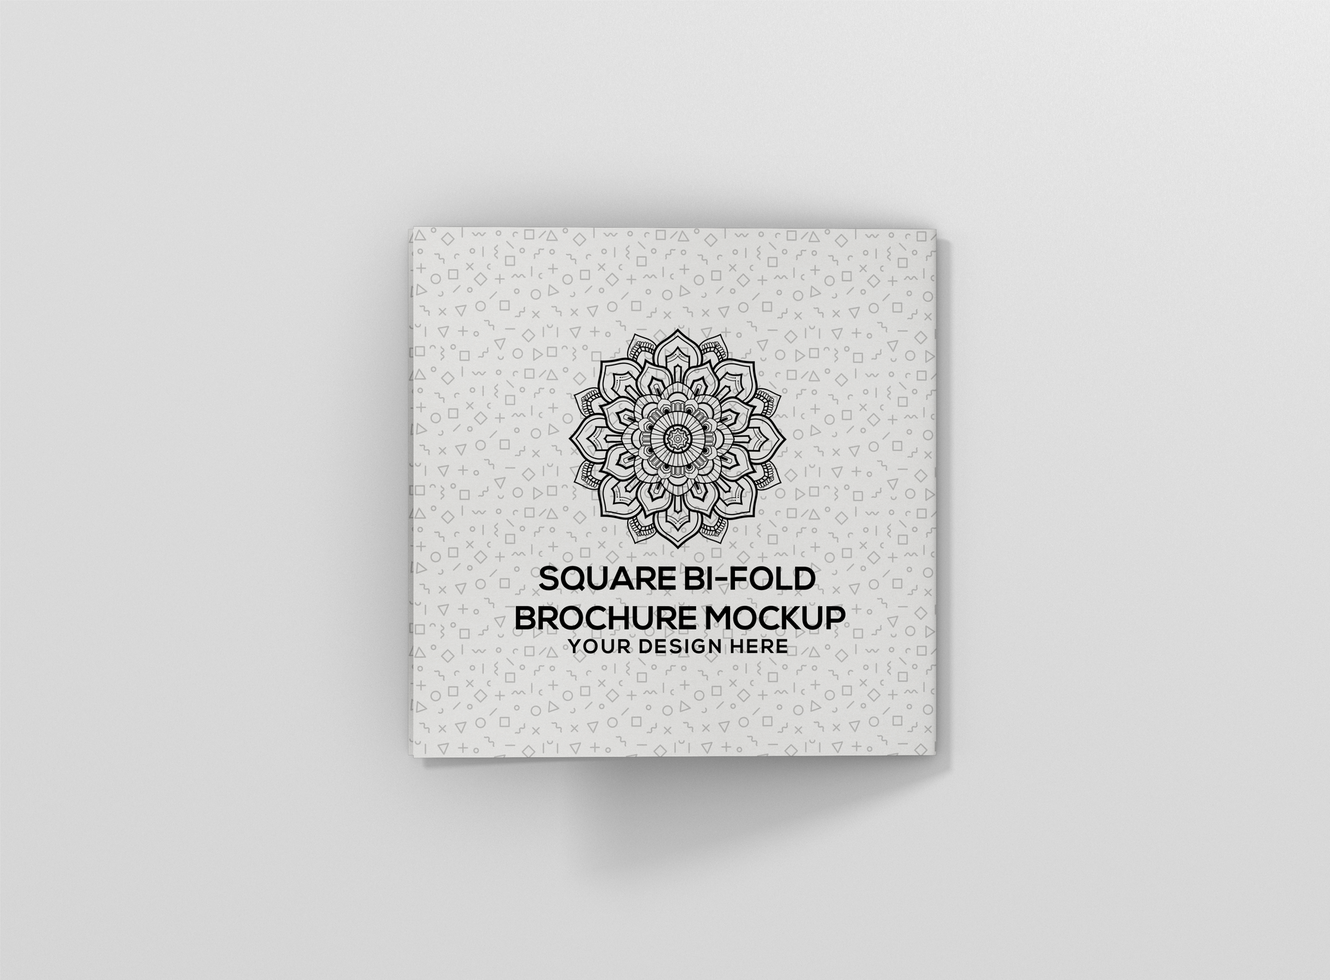 Square Bi fold Brochure Mockup psd